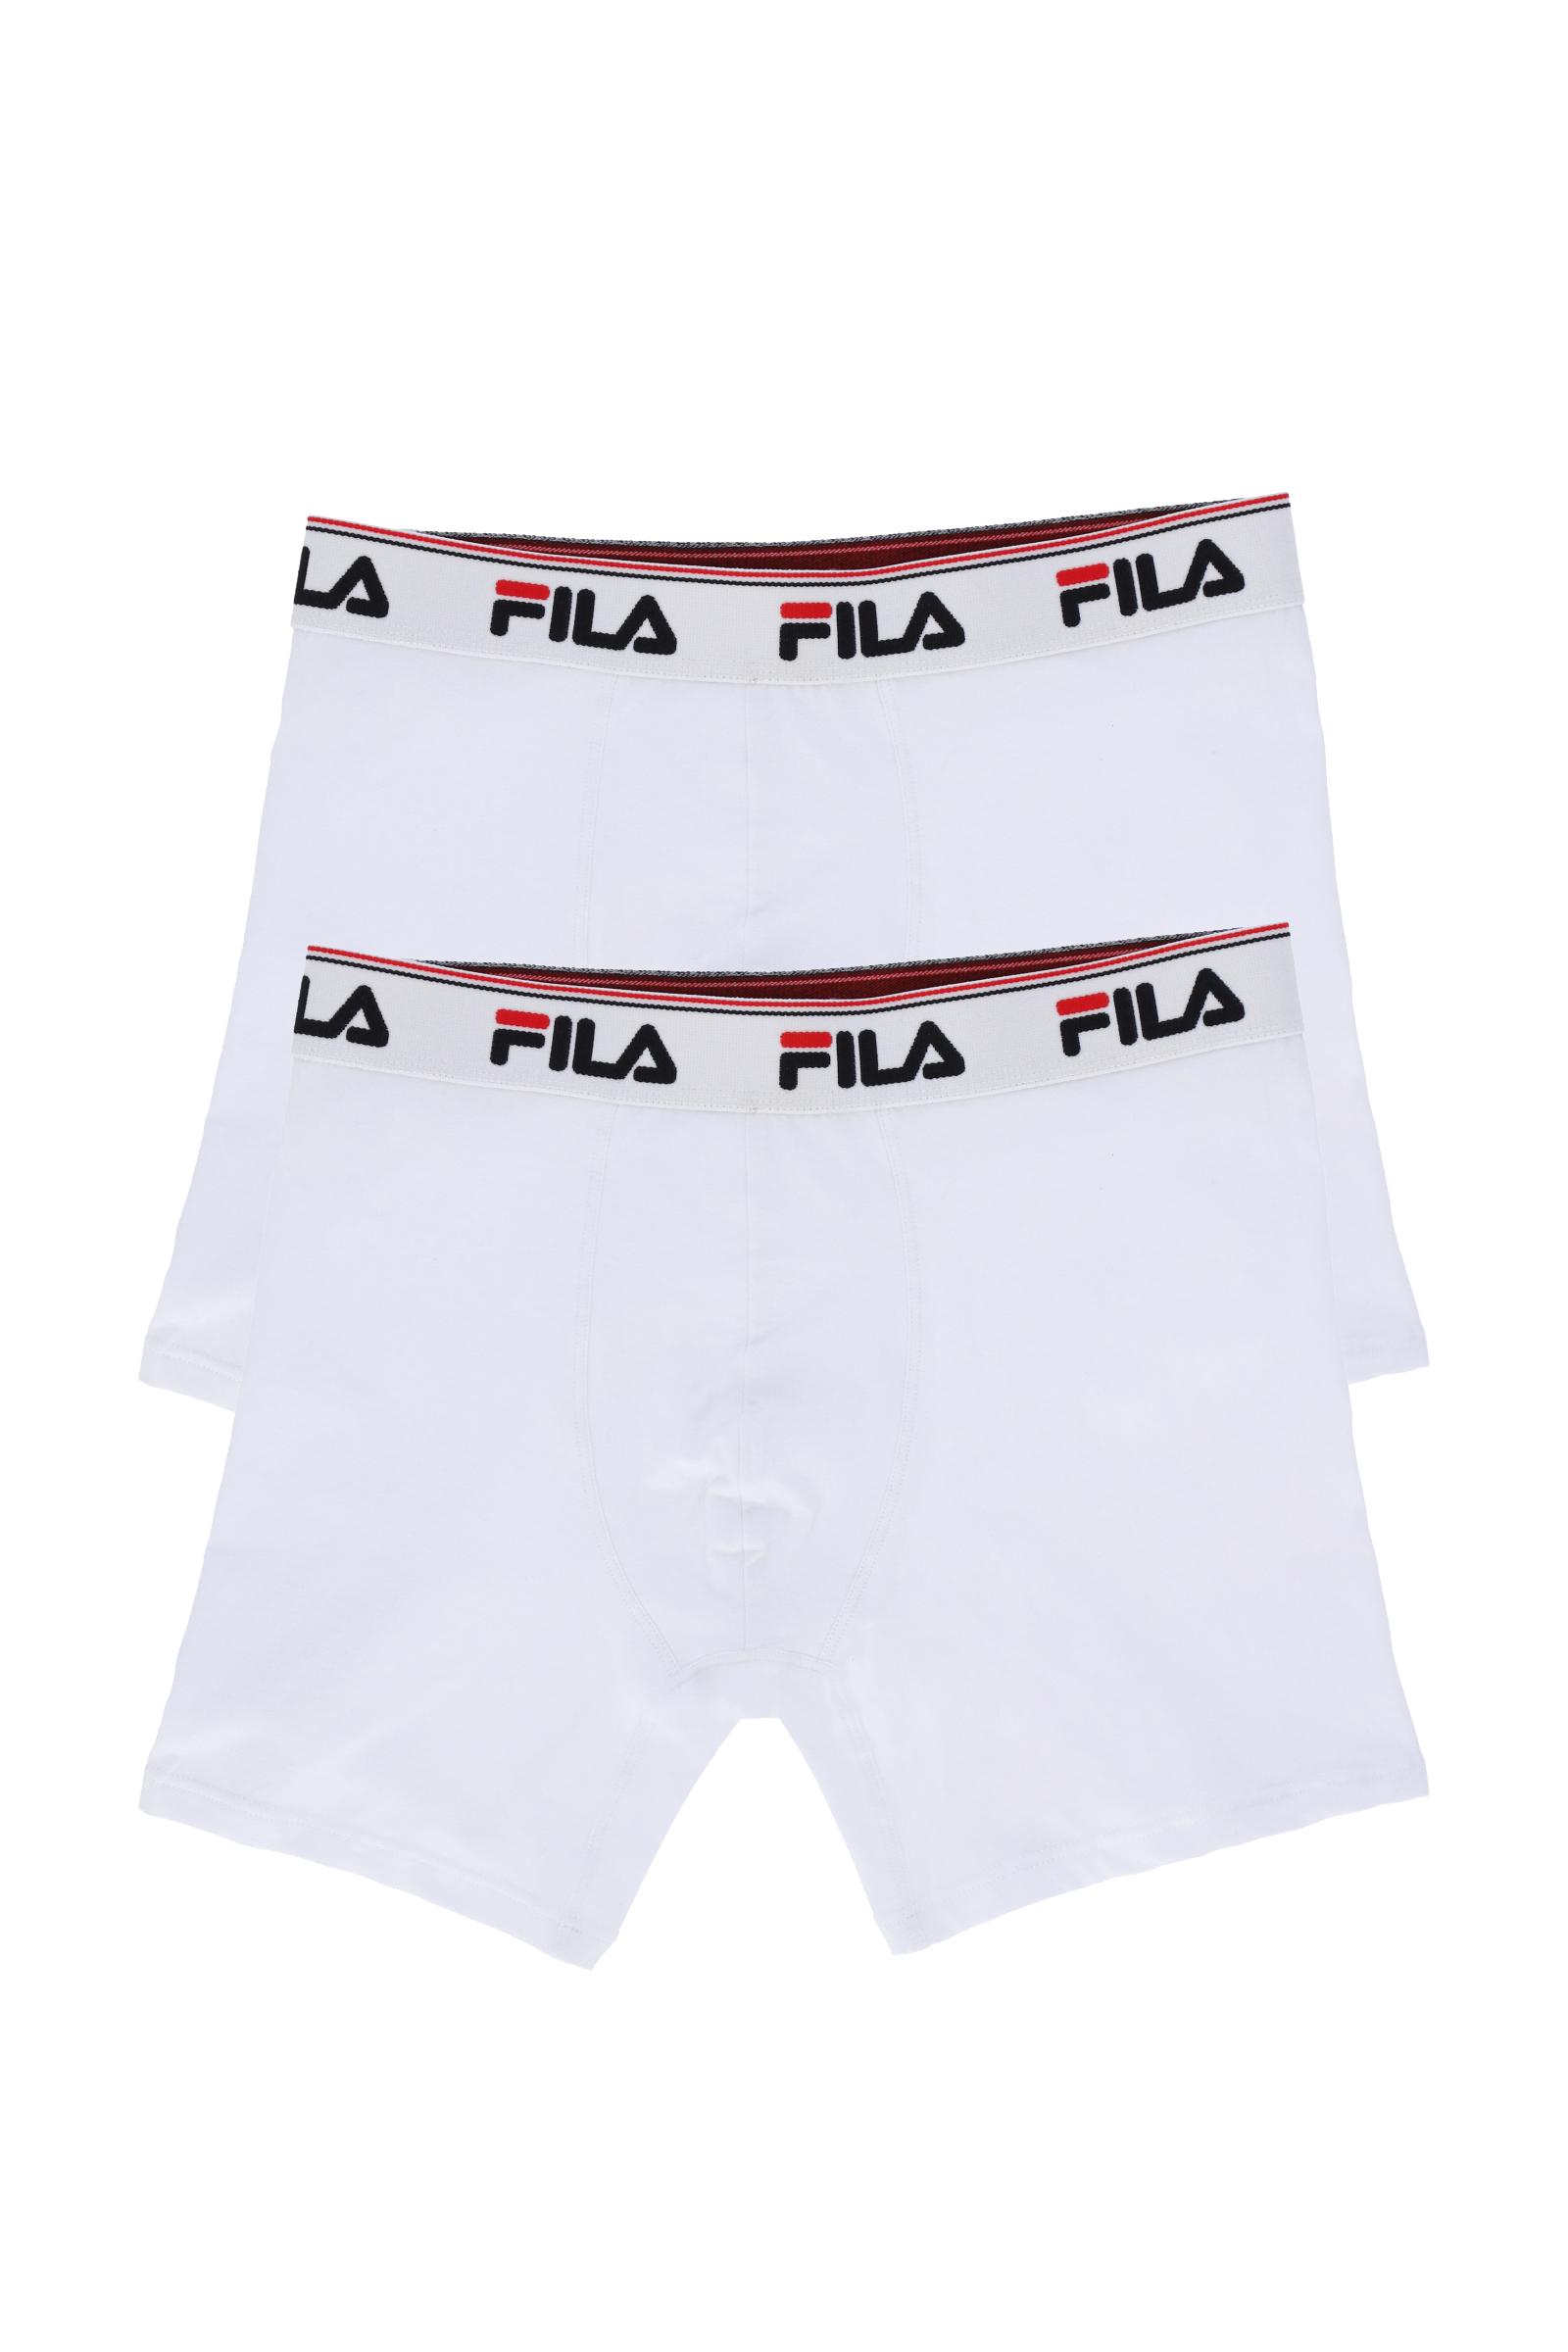 Fila South Africa - Your body loves it #allofme FILA underwear